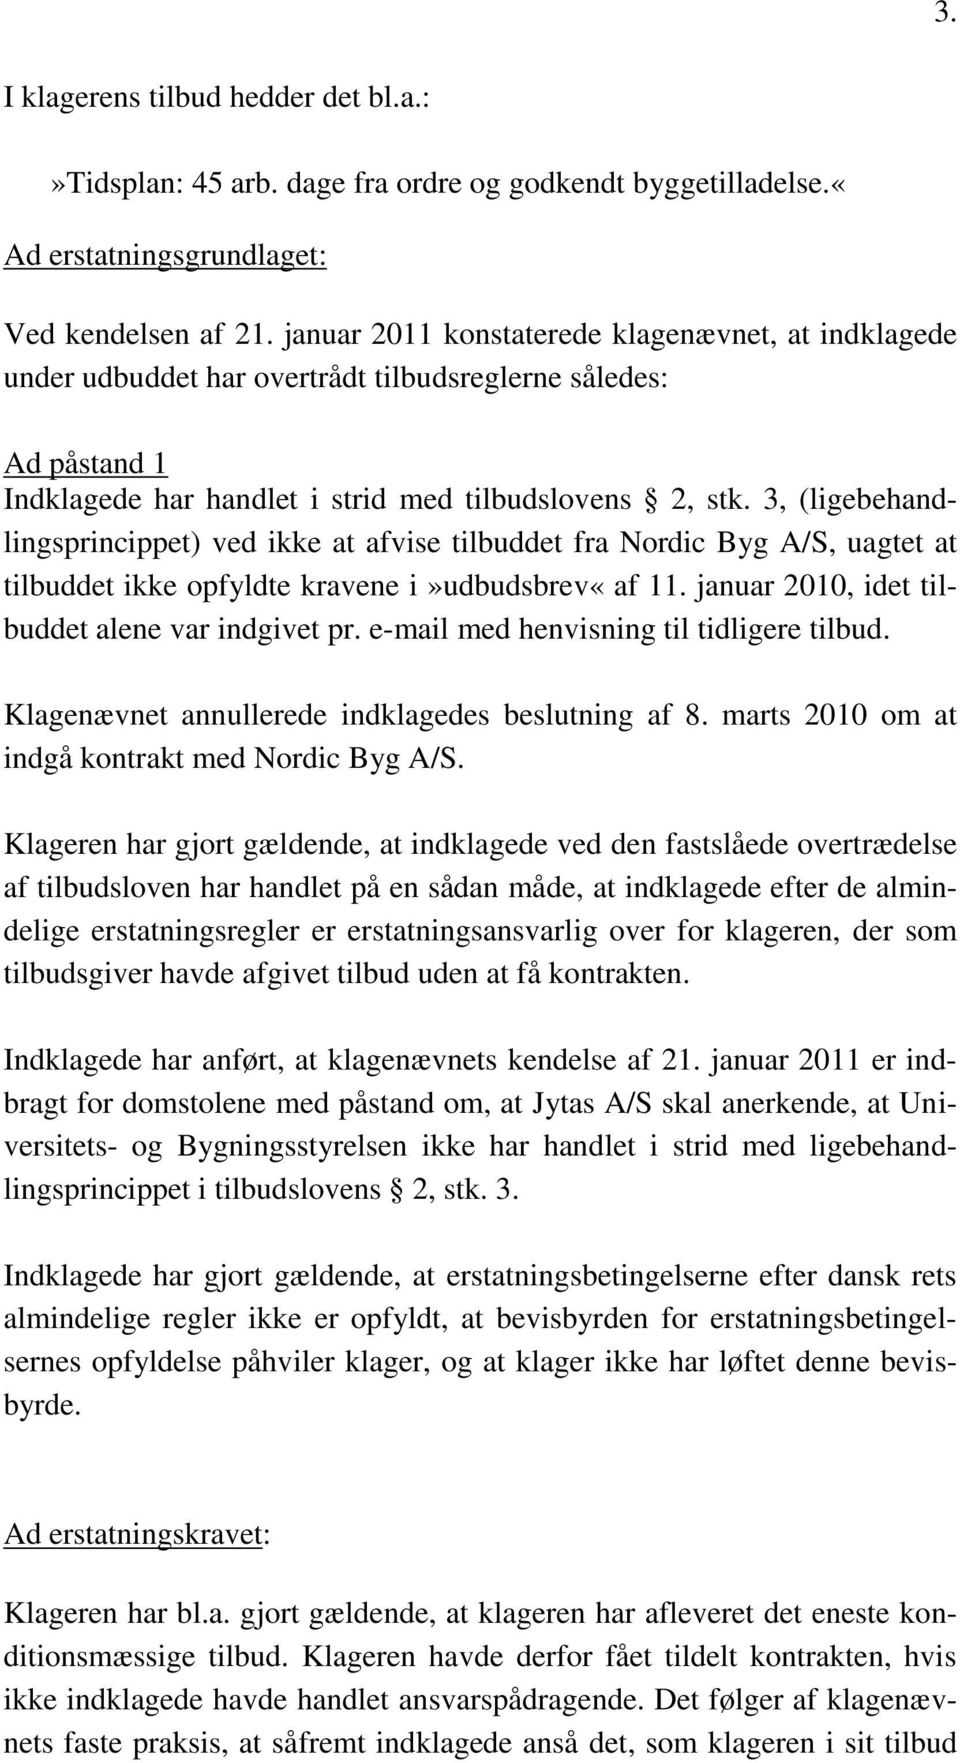 3, (ligebehandlingsprincippet) ved ikke at afvise tilbuddet fra Nordic Byg A/S, uagtet at tilbuddet ikke opfyldte kravene i»udbudsbrev«af 11. januar 2010, idet tilbuddet alene var indgivet pr.